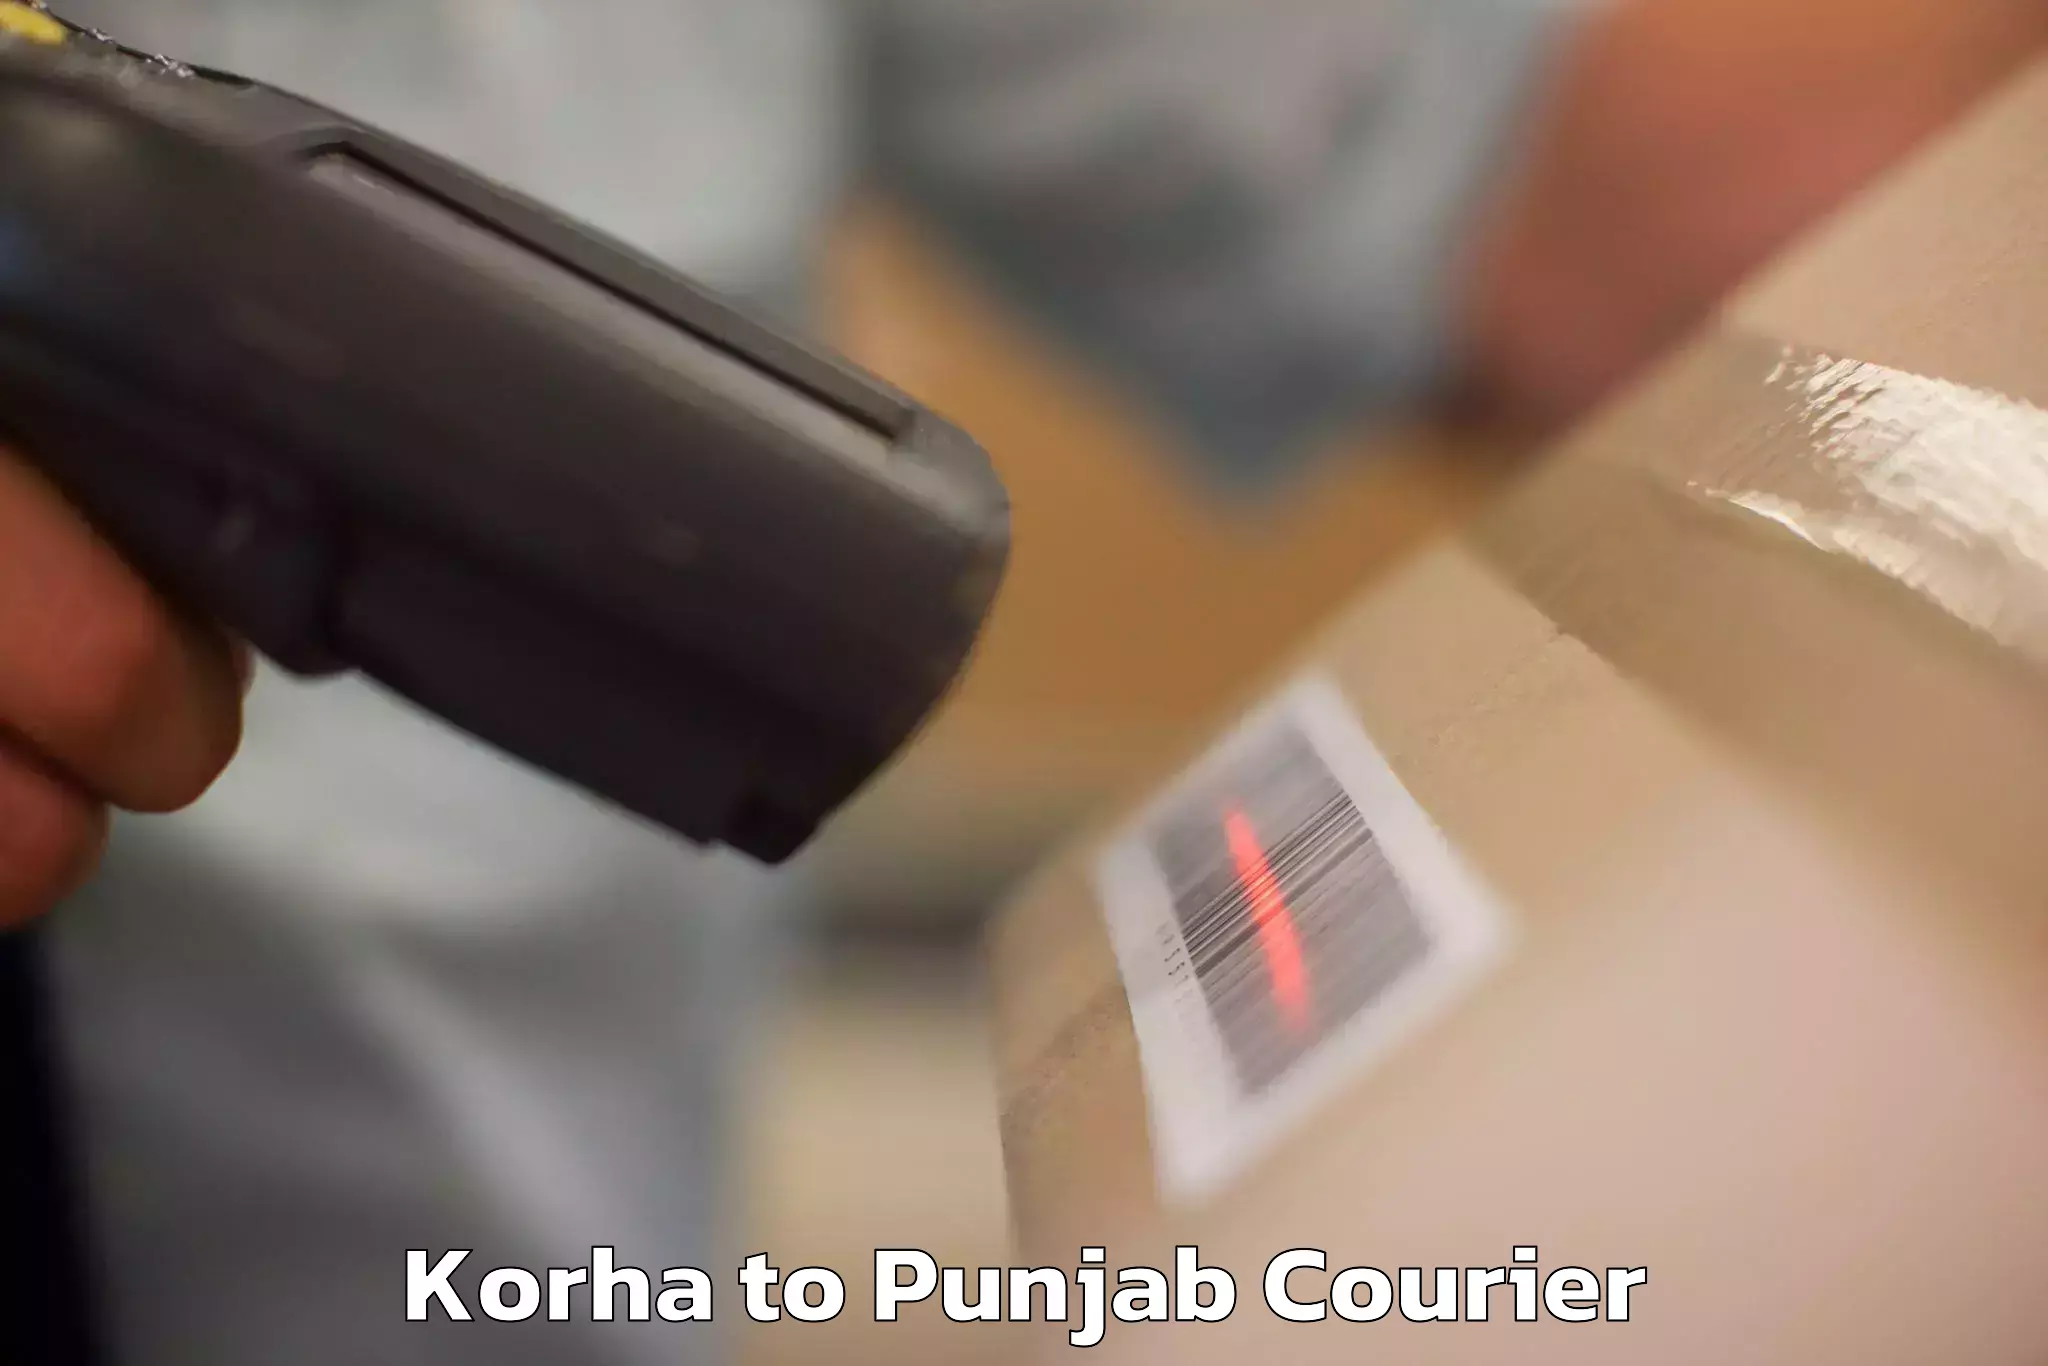 Luggage delivery app Korha to Rupnagar